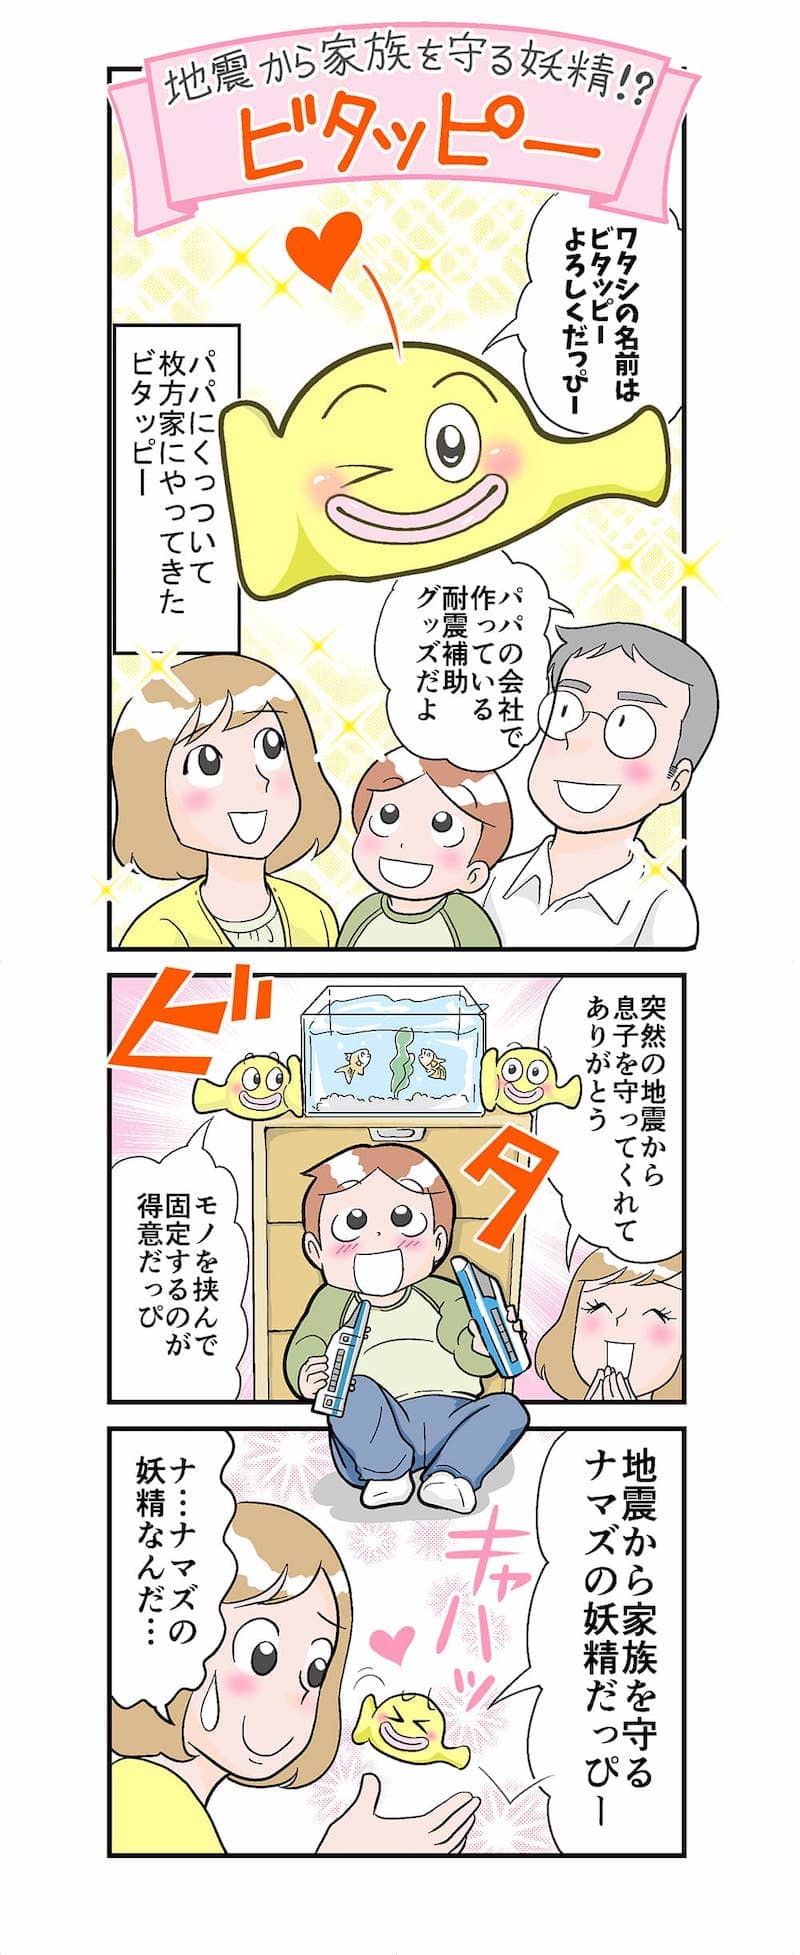 3D耐震補助グッズ「地震から家族を守る妖精!?ビタッピー」漫画